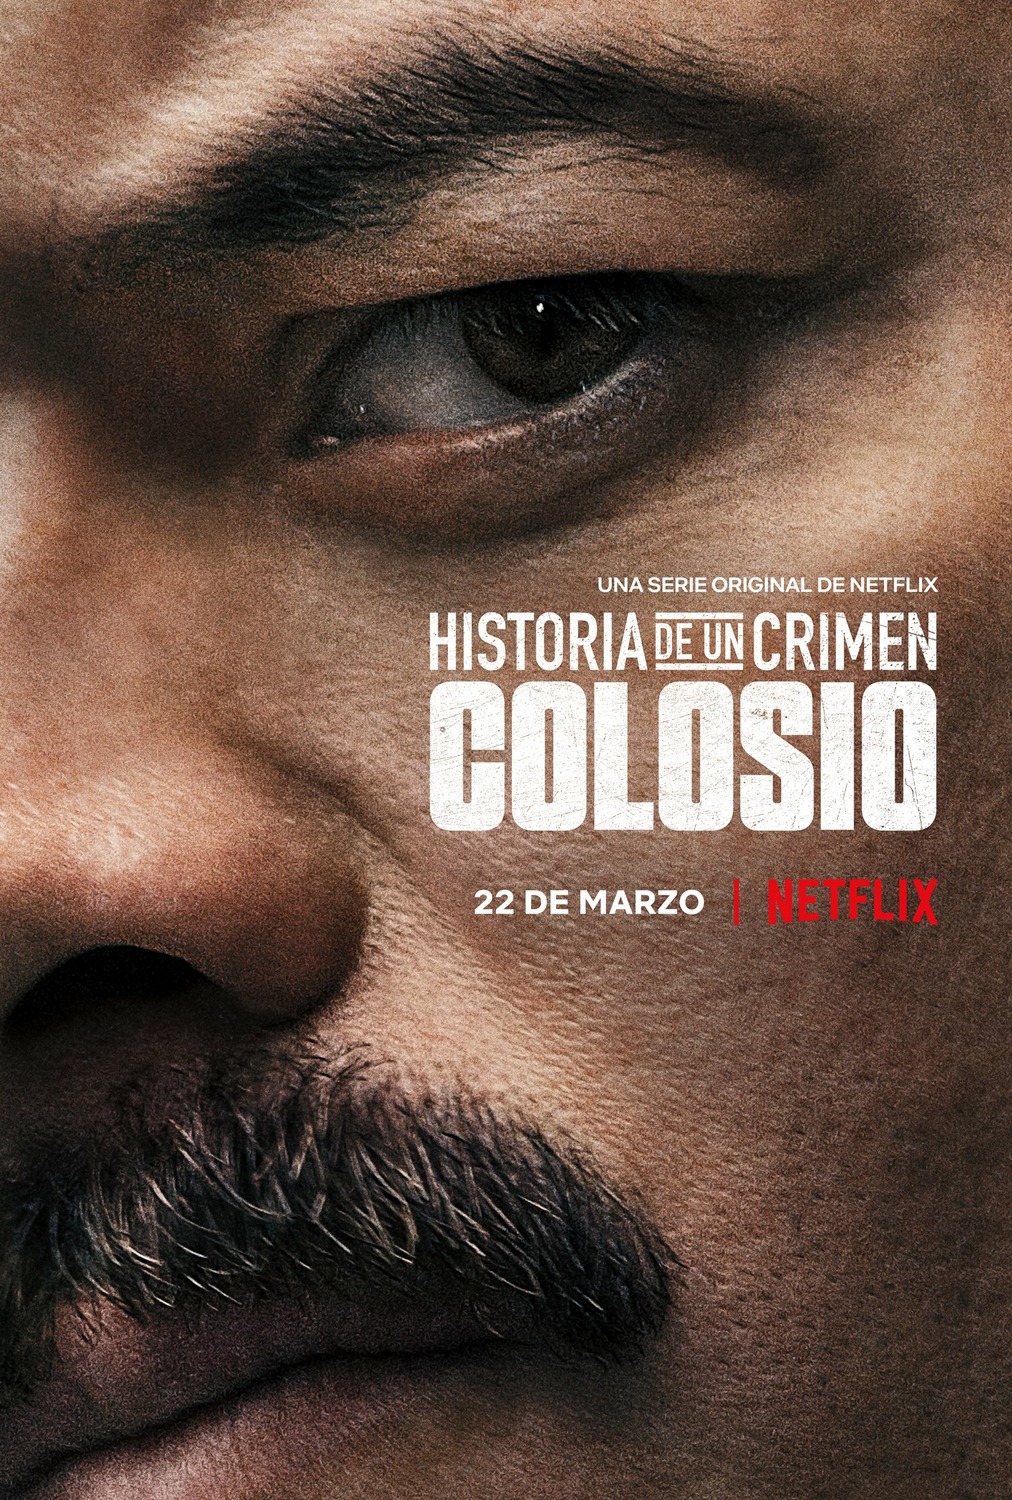 Extra Large TV Poster Image for Historia de un Crimen: Colosio 